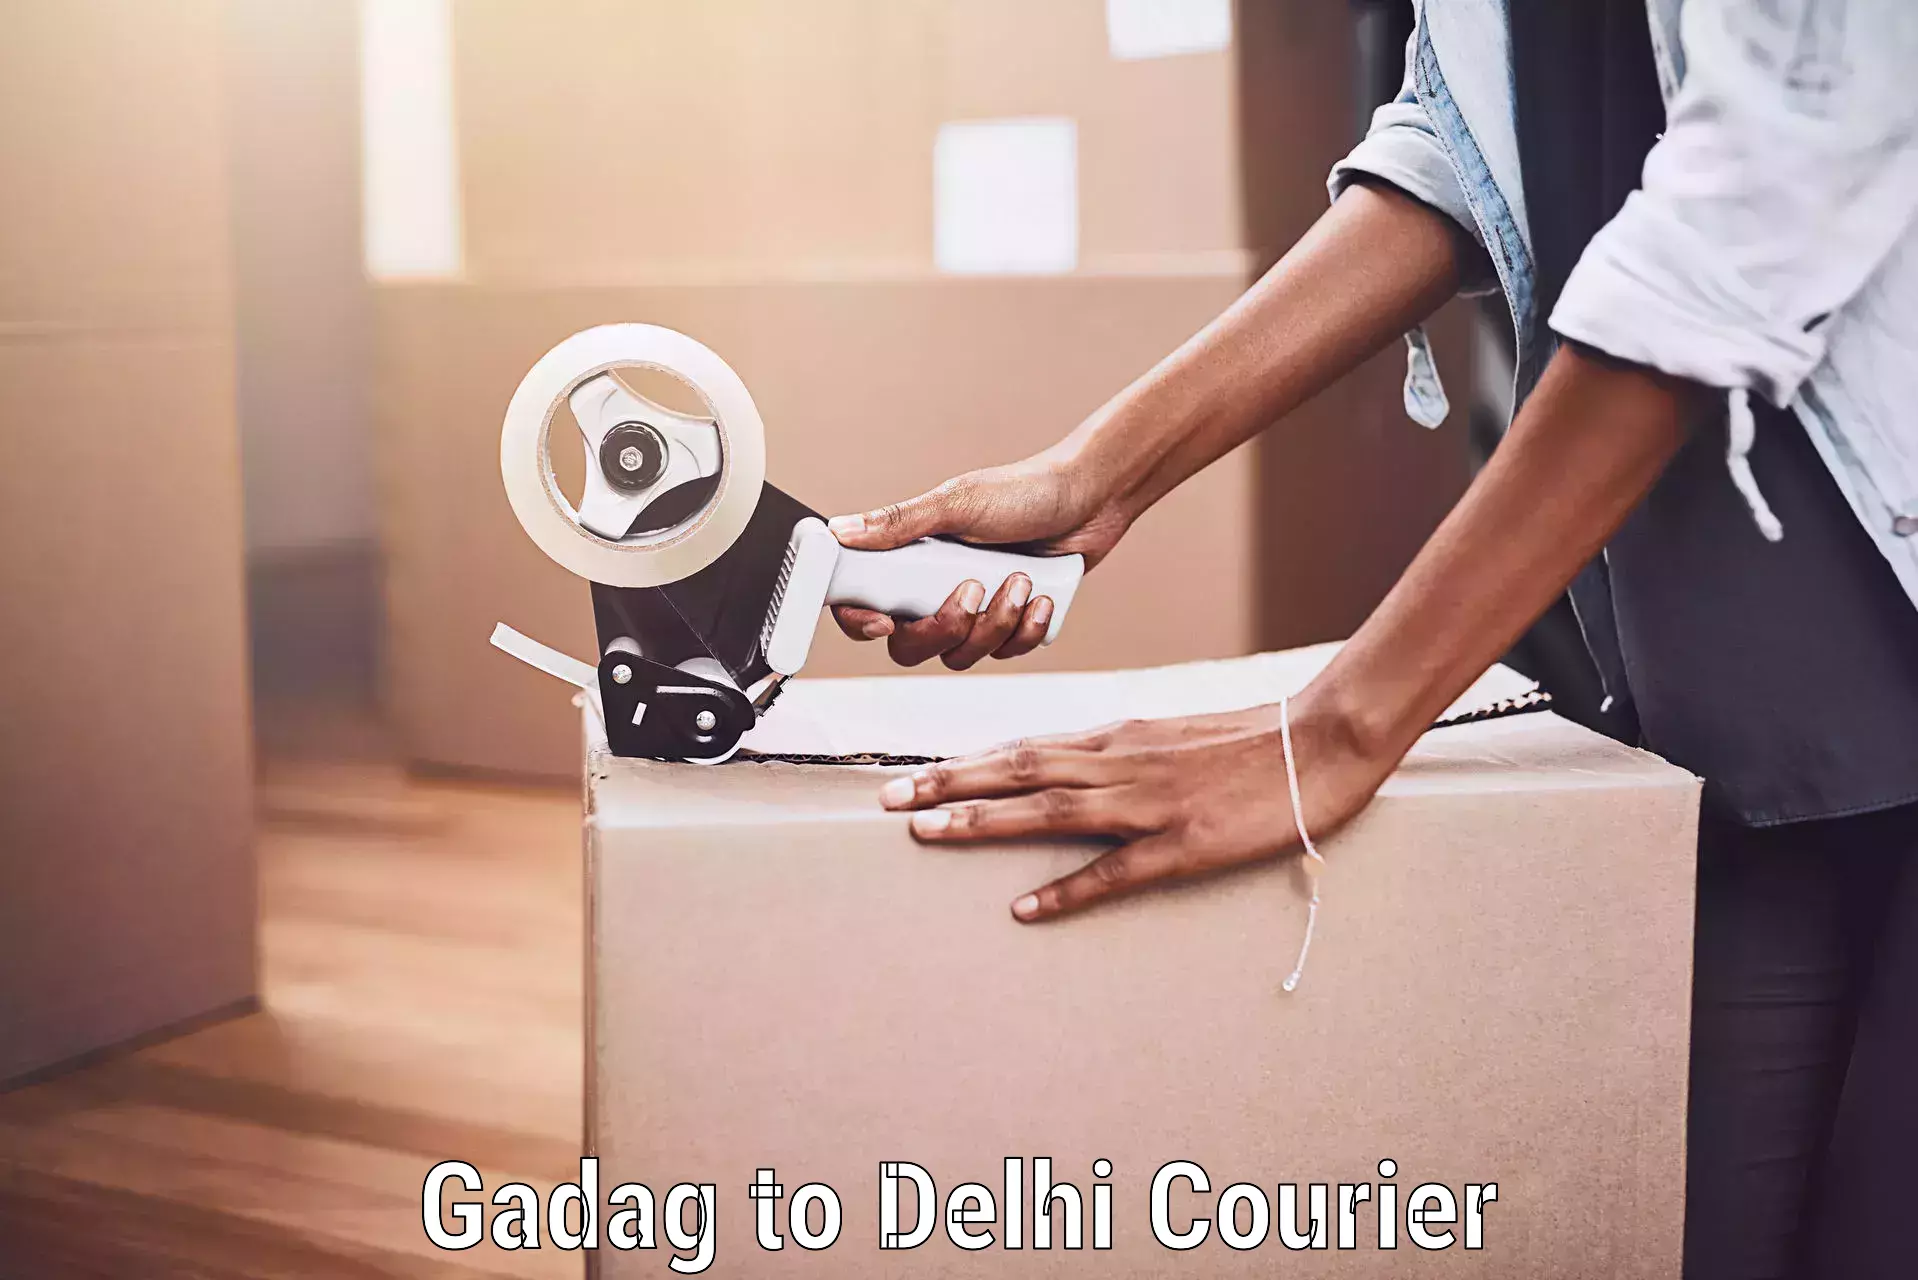 Luggage shipment specialists Gadag to Delhi